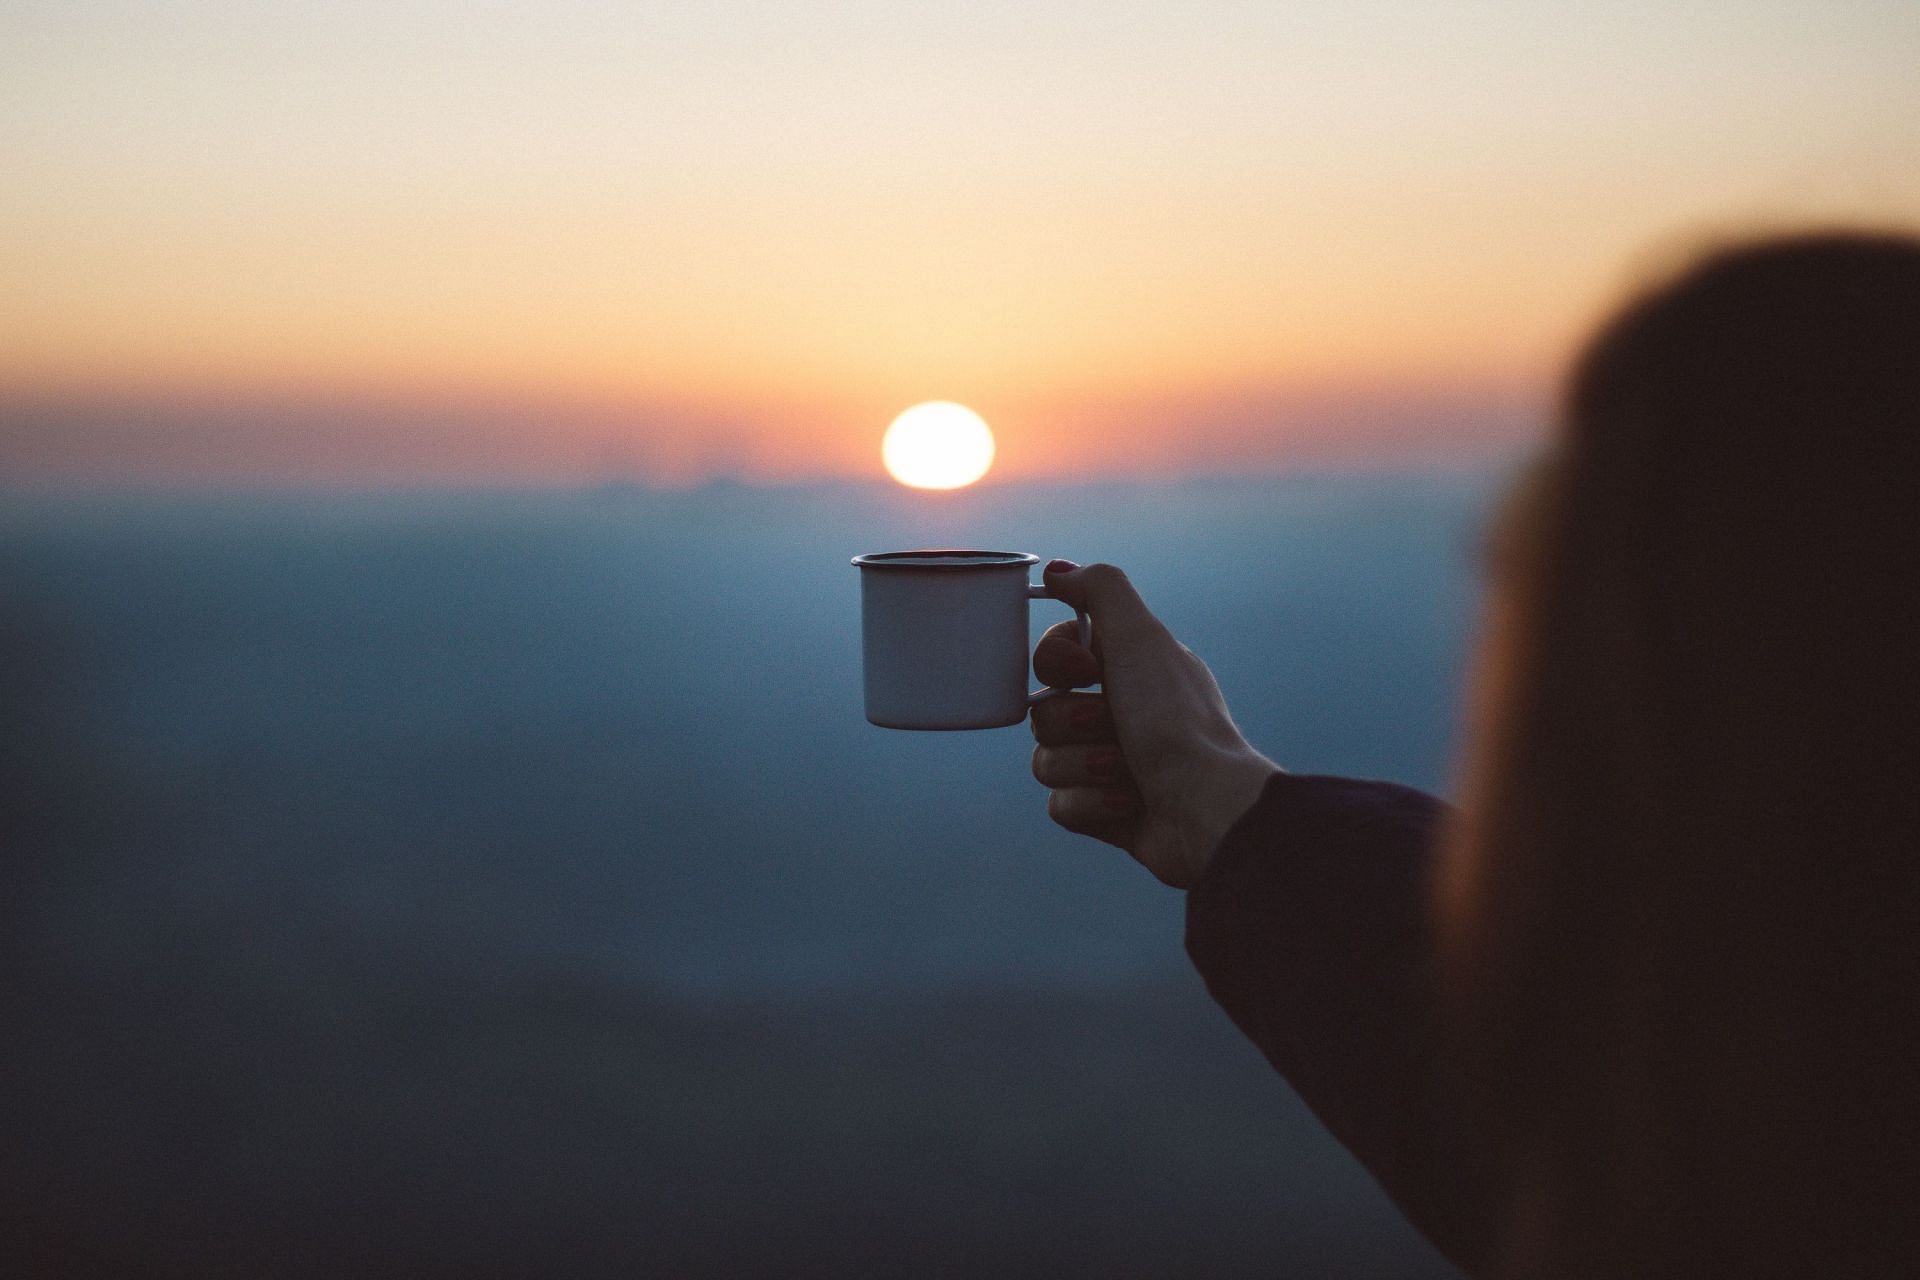 Coffee is best drunk in the morning. (Image via Pexels)